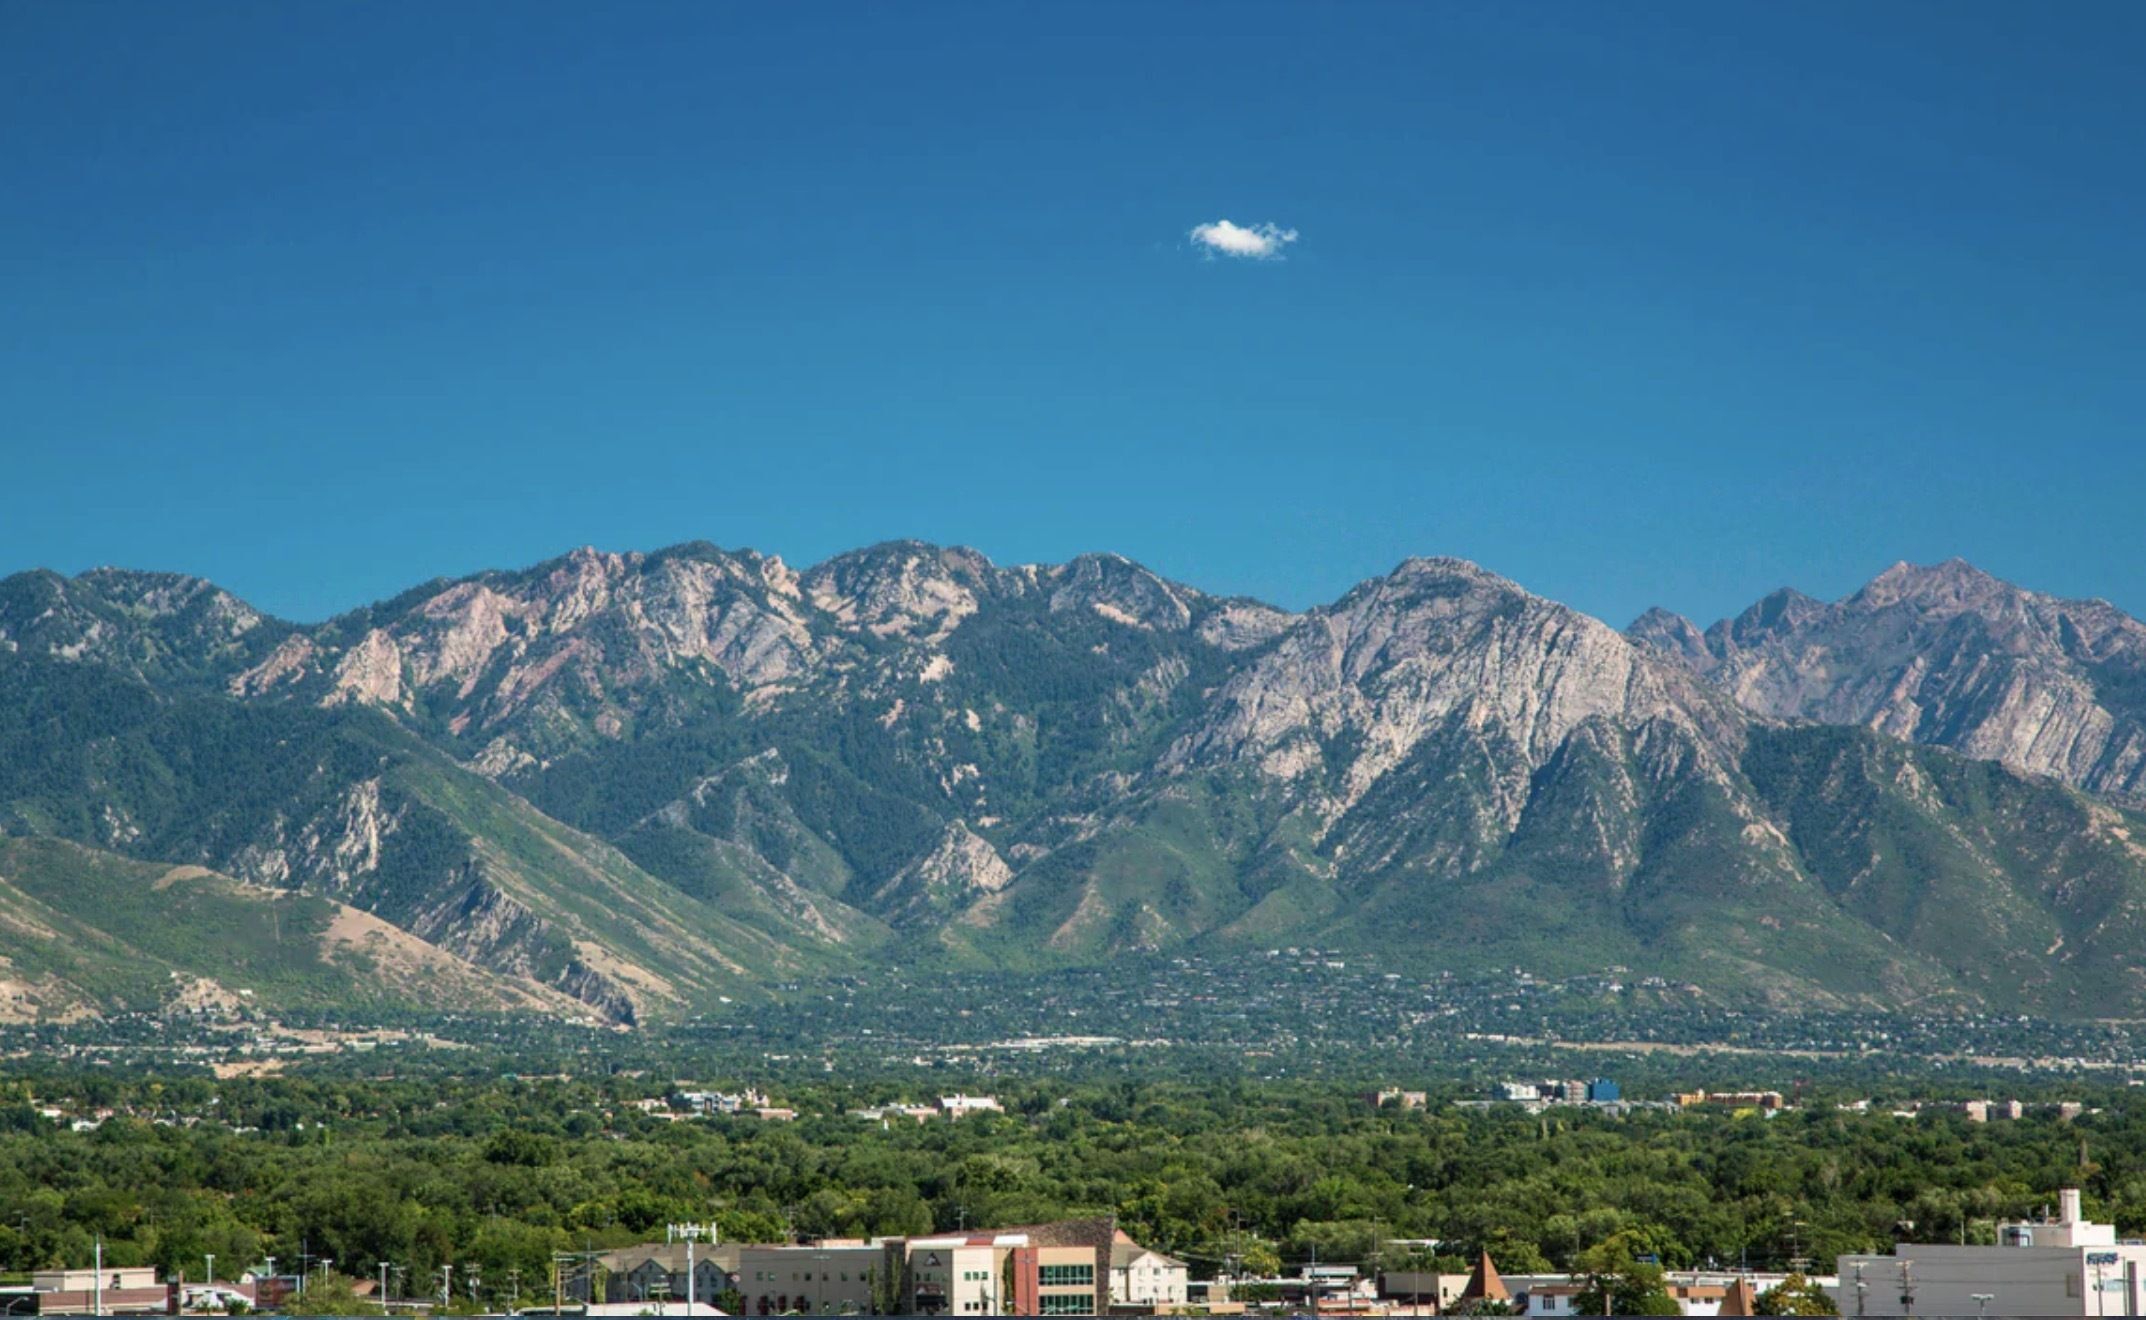 Visit Beautiful Salt Lake City at U2FP’s Annual Symposium